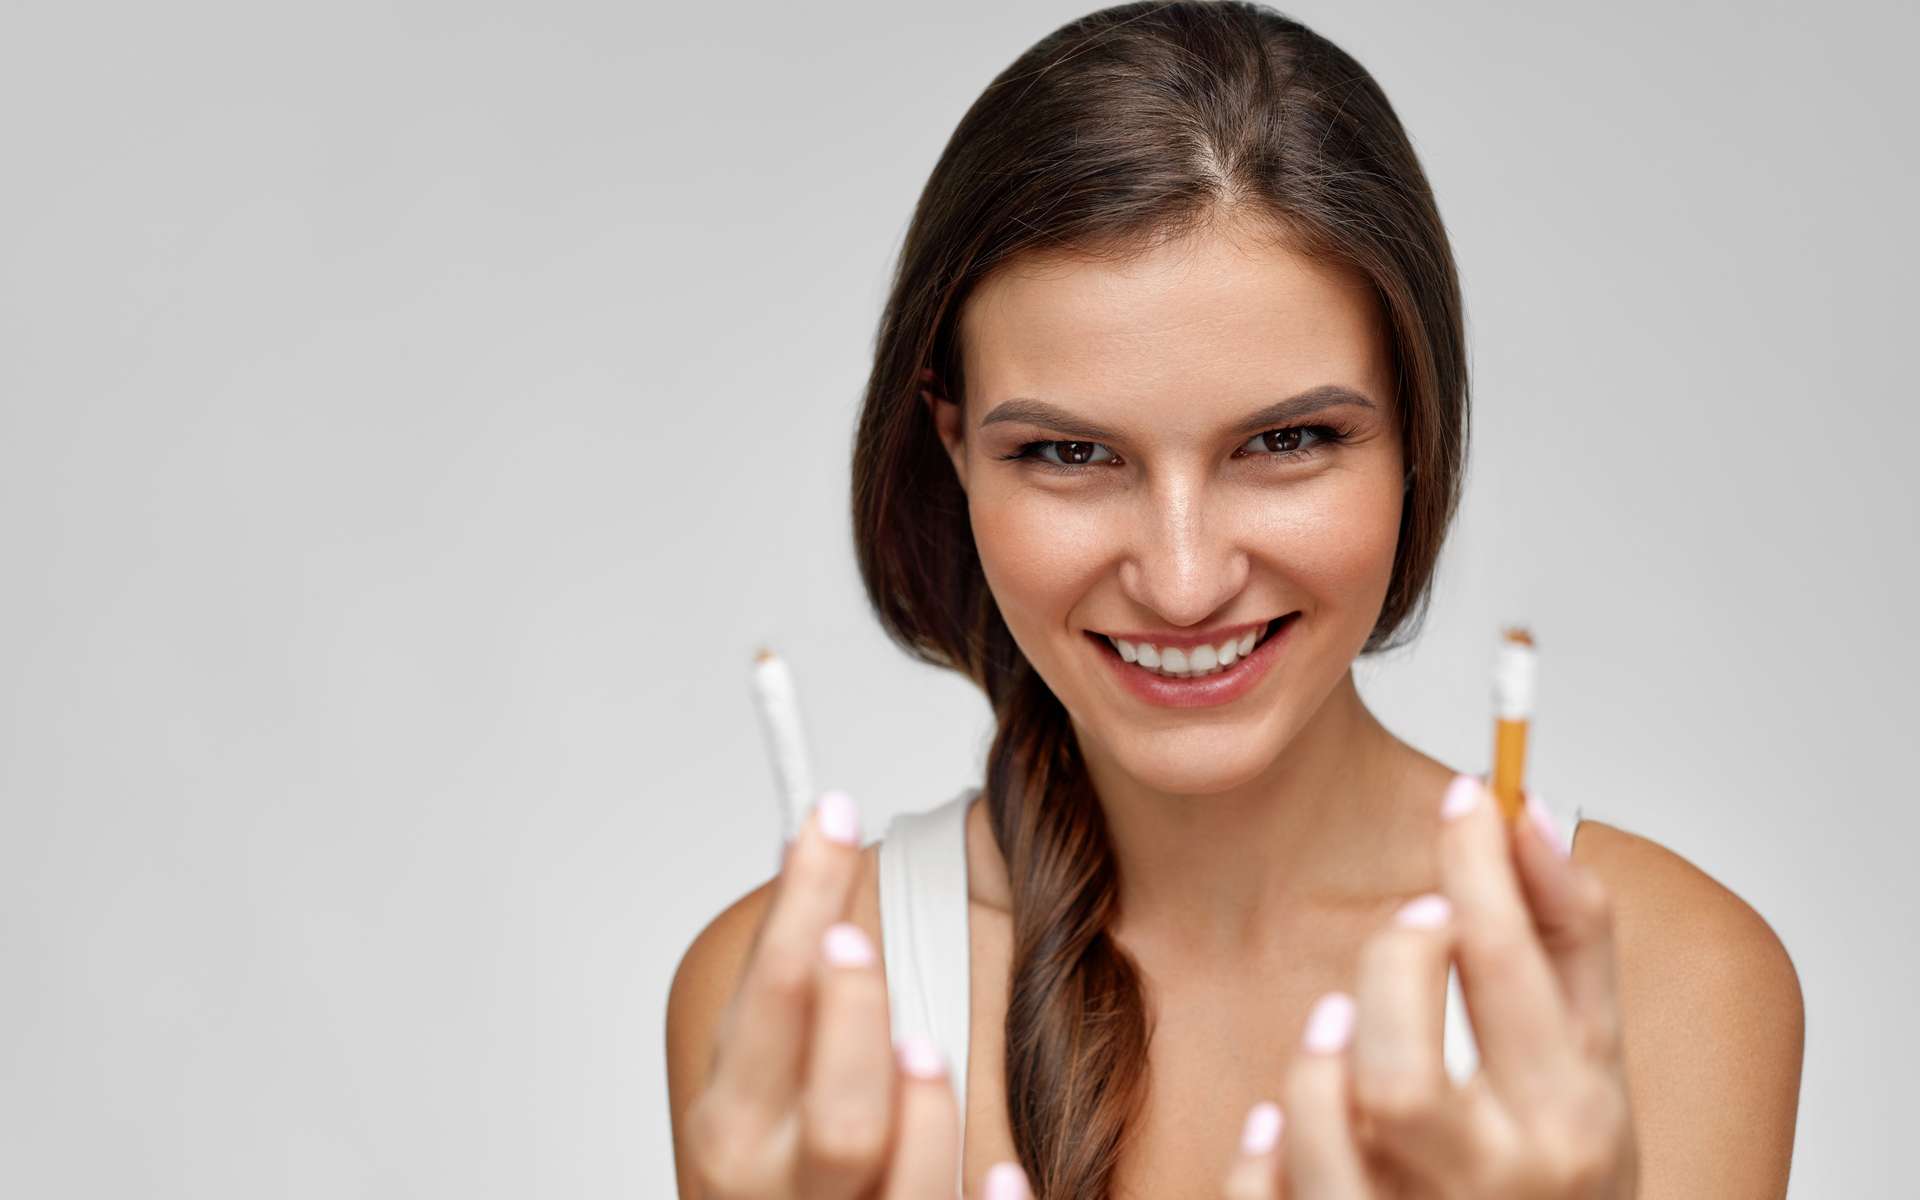 L'arrêt du tabac redonne bonne mine, et c'est bon pour le moral et la santé. © Puhhha, Adobe Stock